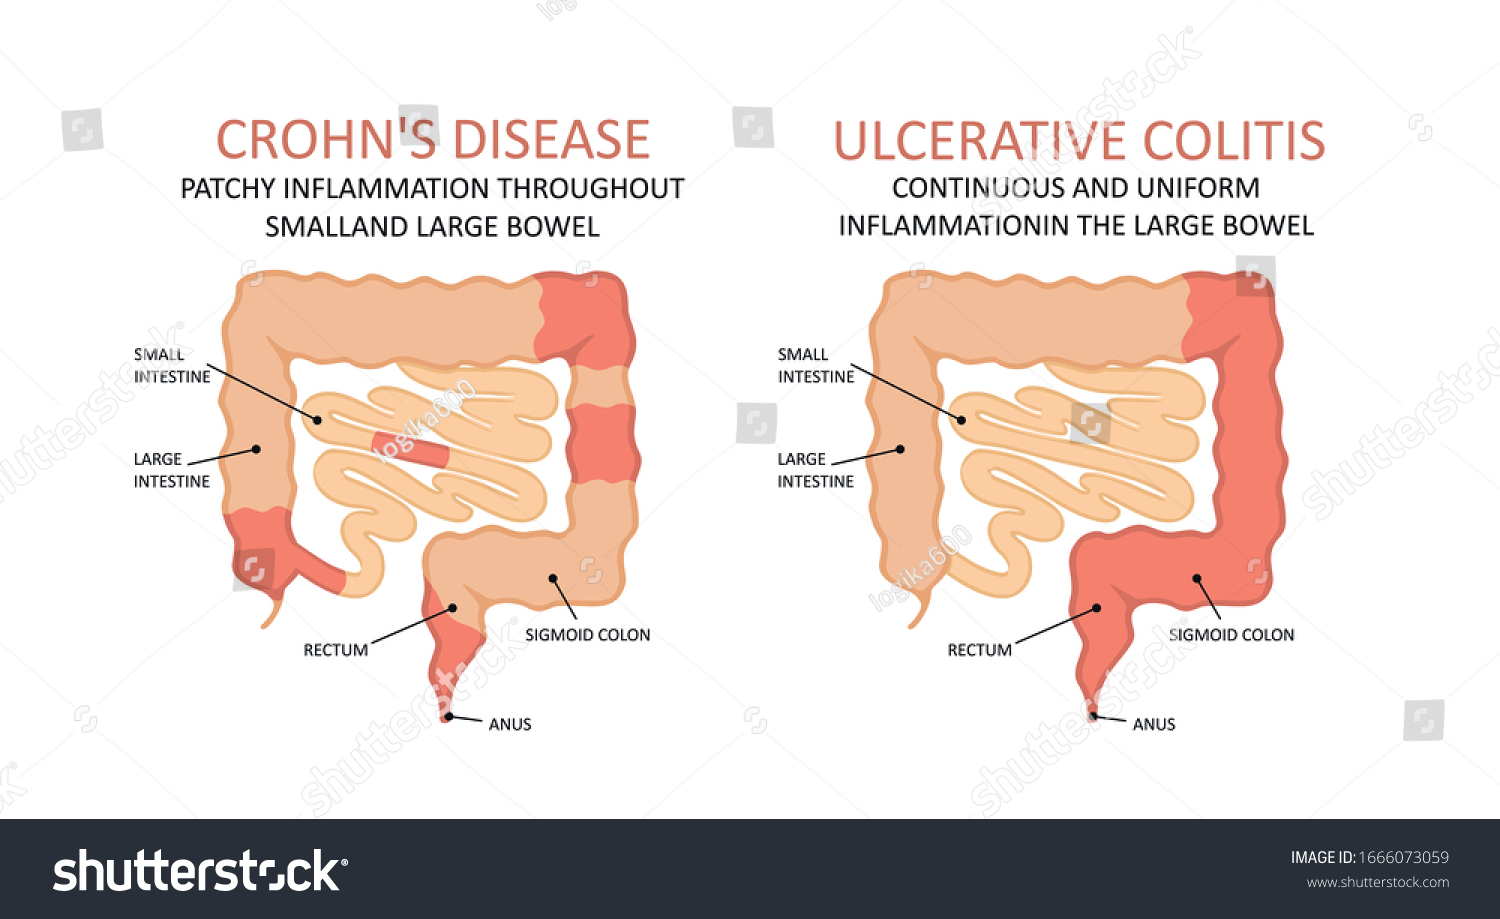 Ulcerative Colitis Imágenes Fotos De Stock Y Vectores Shutterstock 